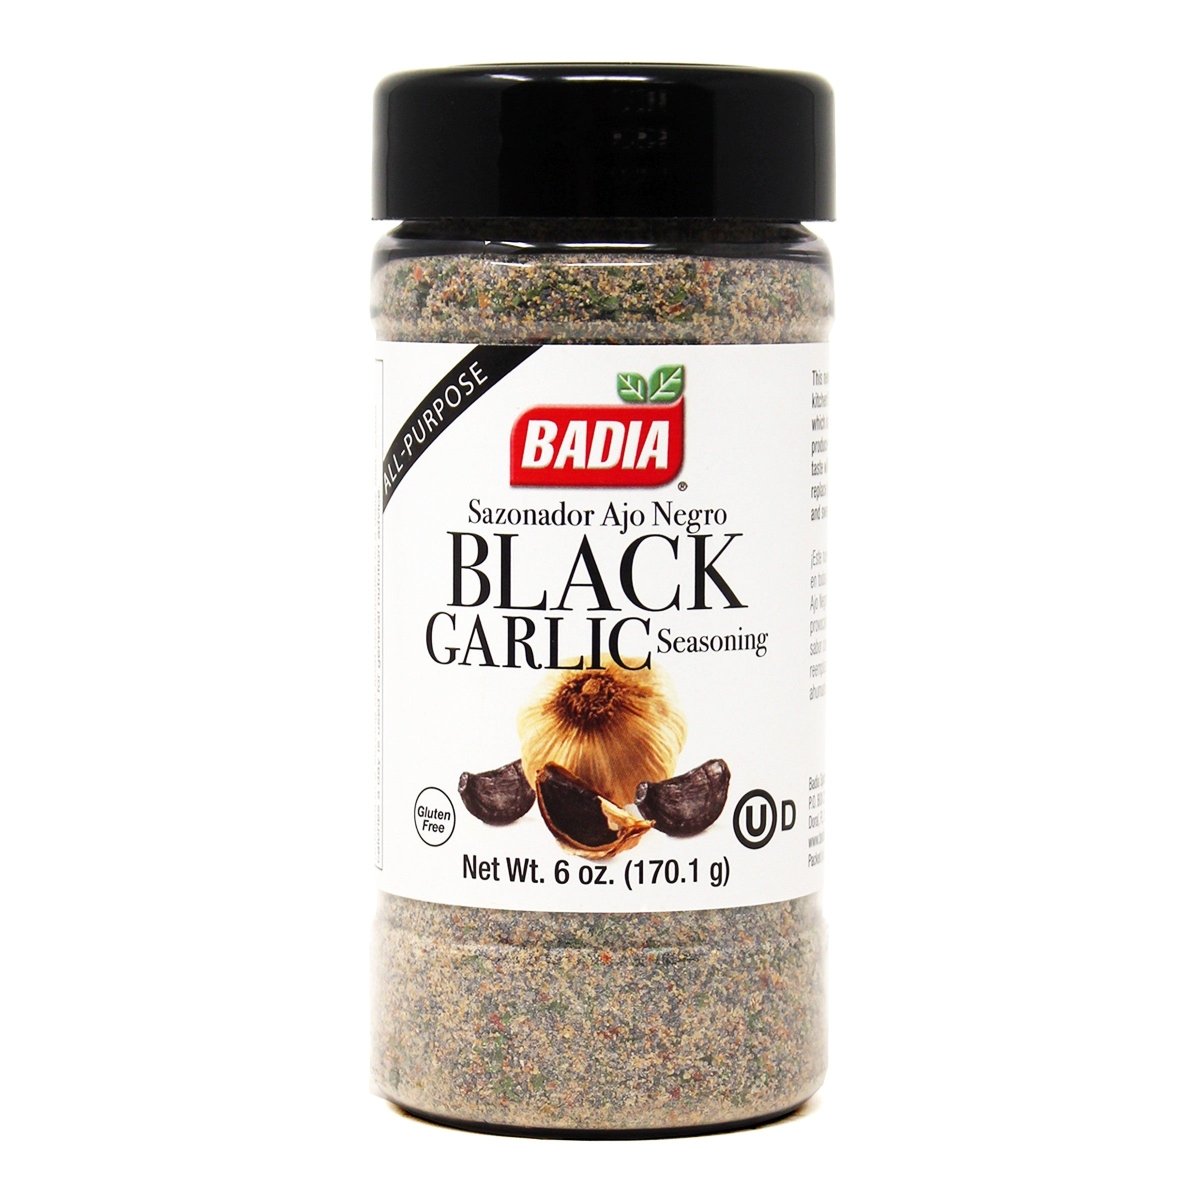 Badia Seafood Seasoning, Creole Blend, Blackened - 4.5 oz